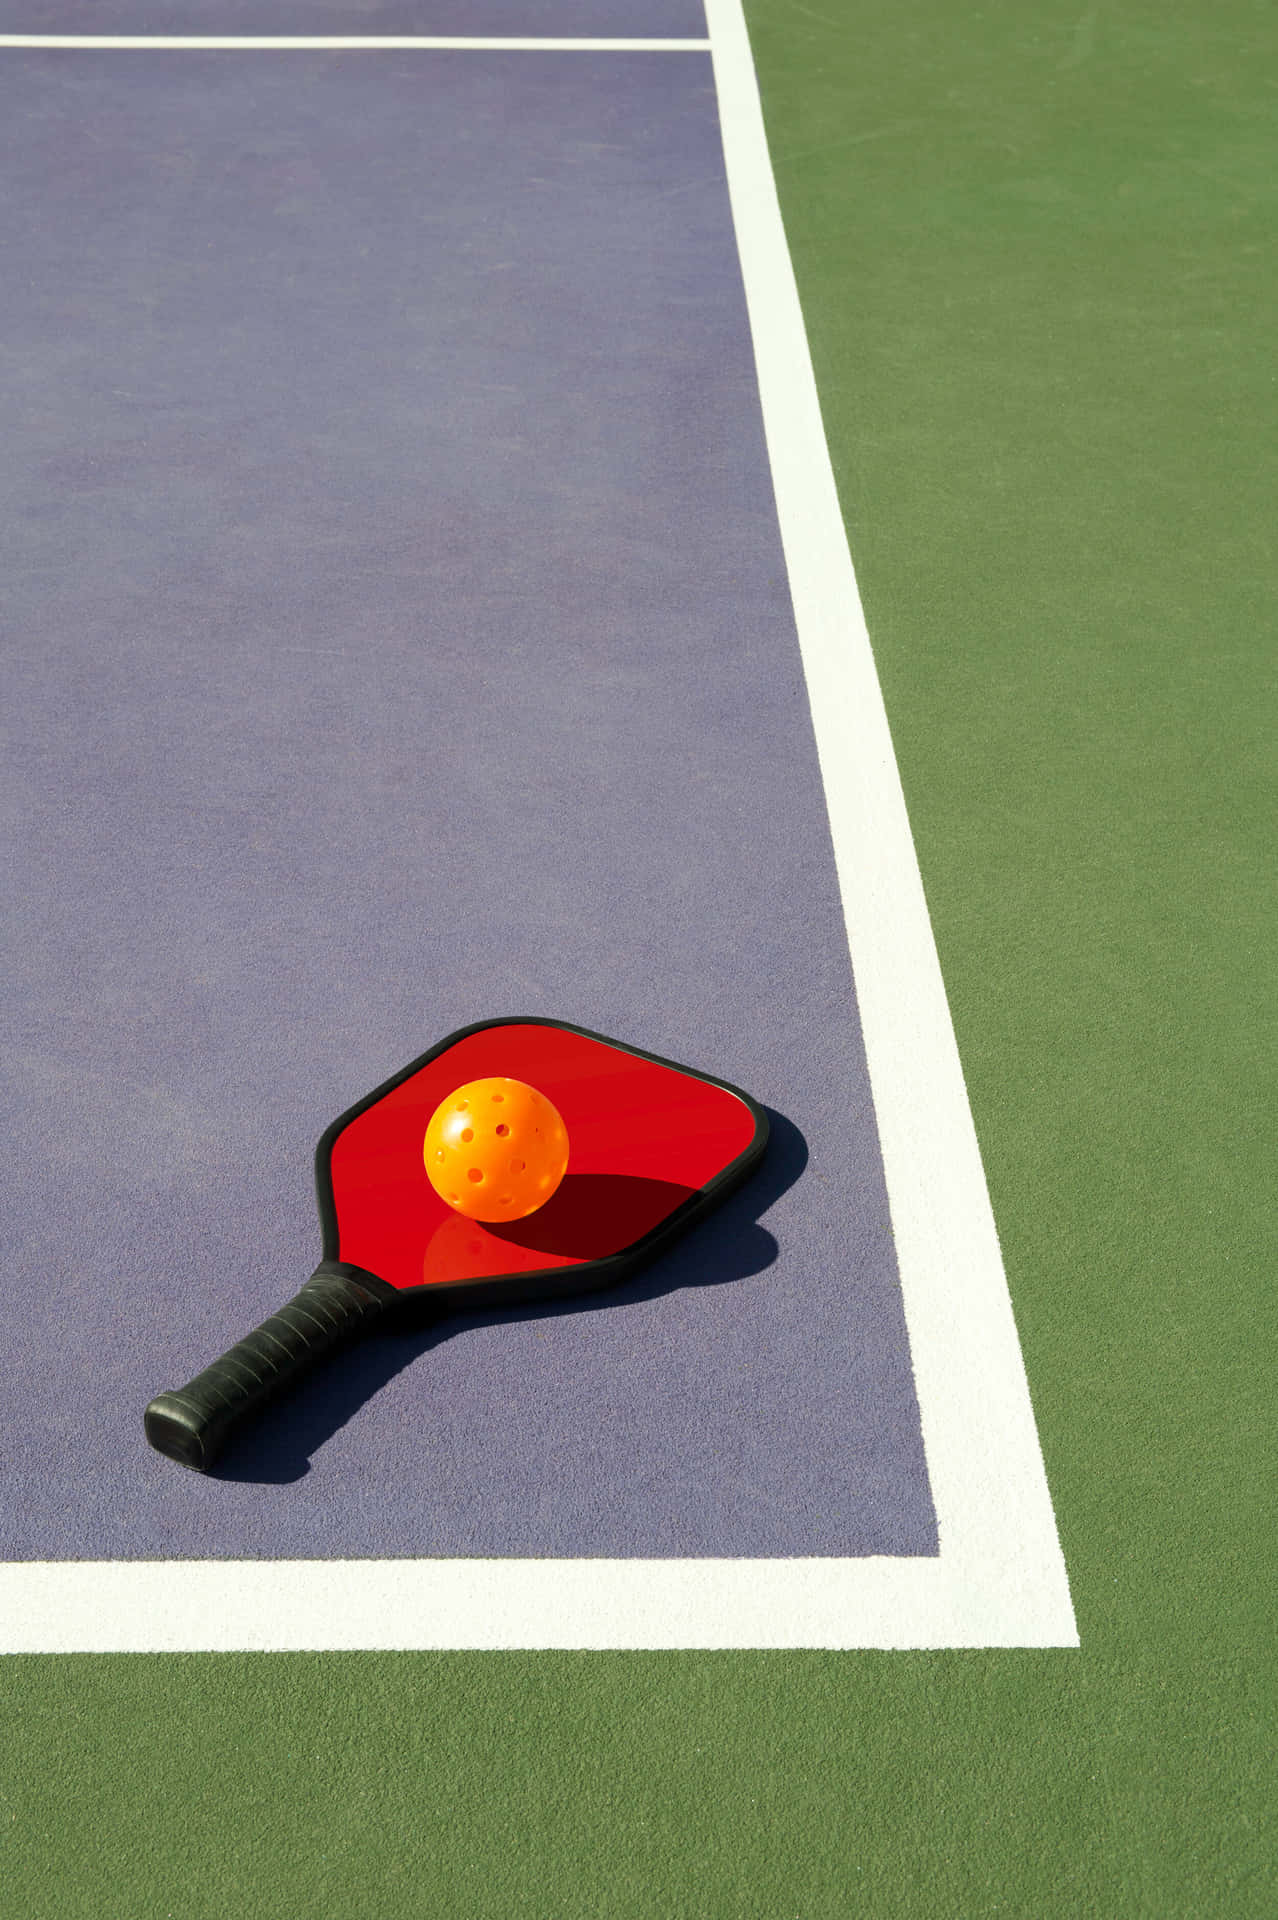 Entennisracketa På En Tennisbana